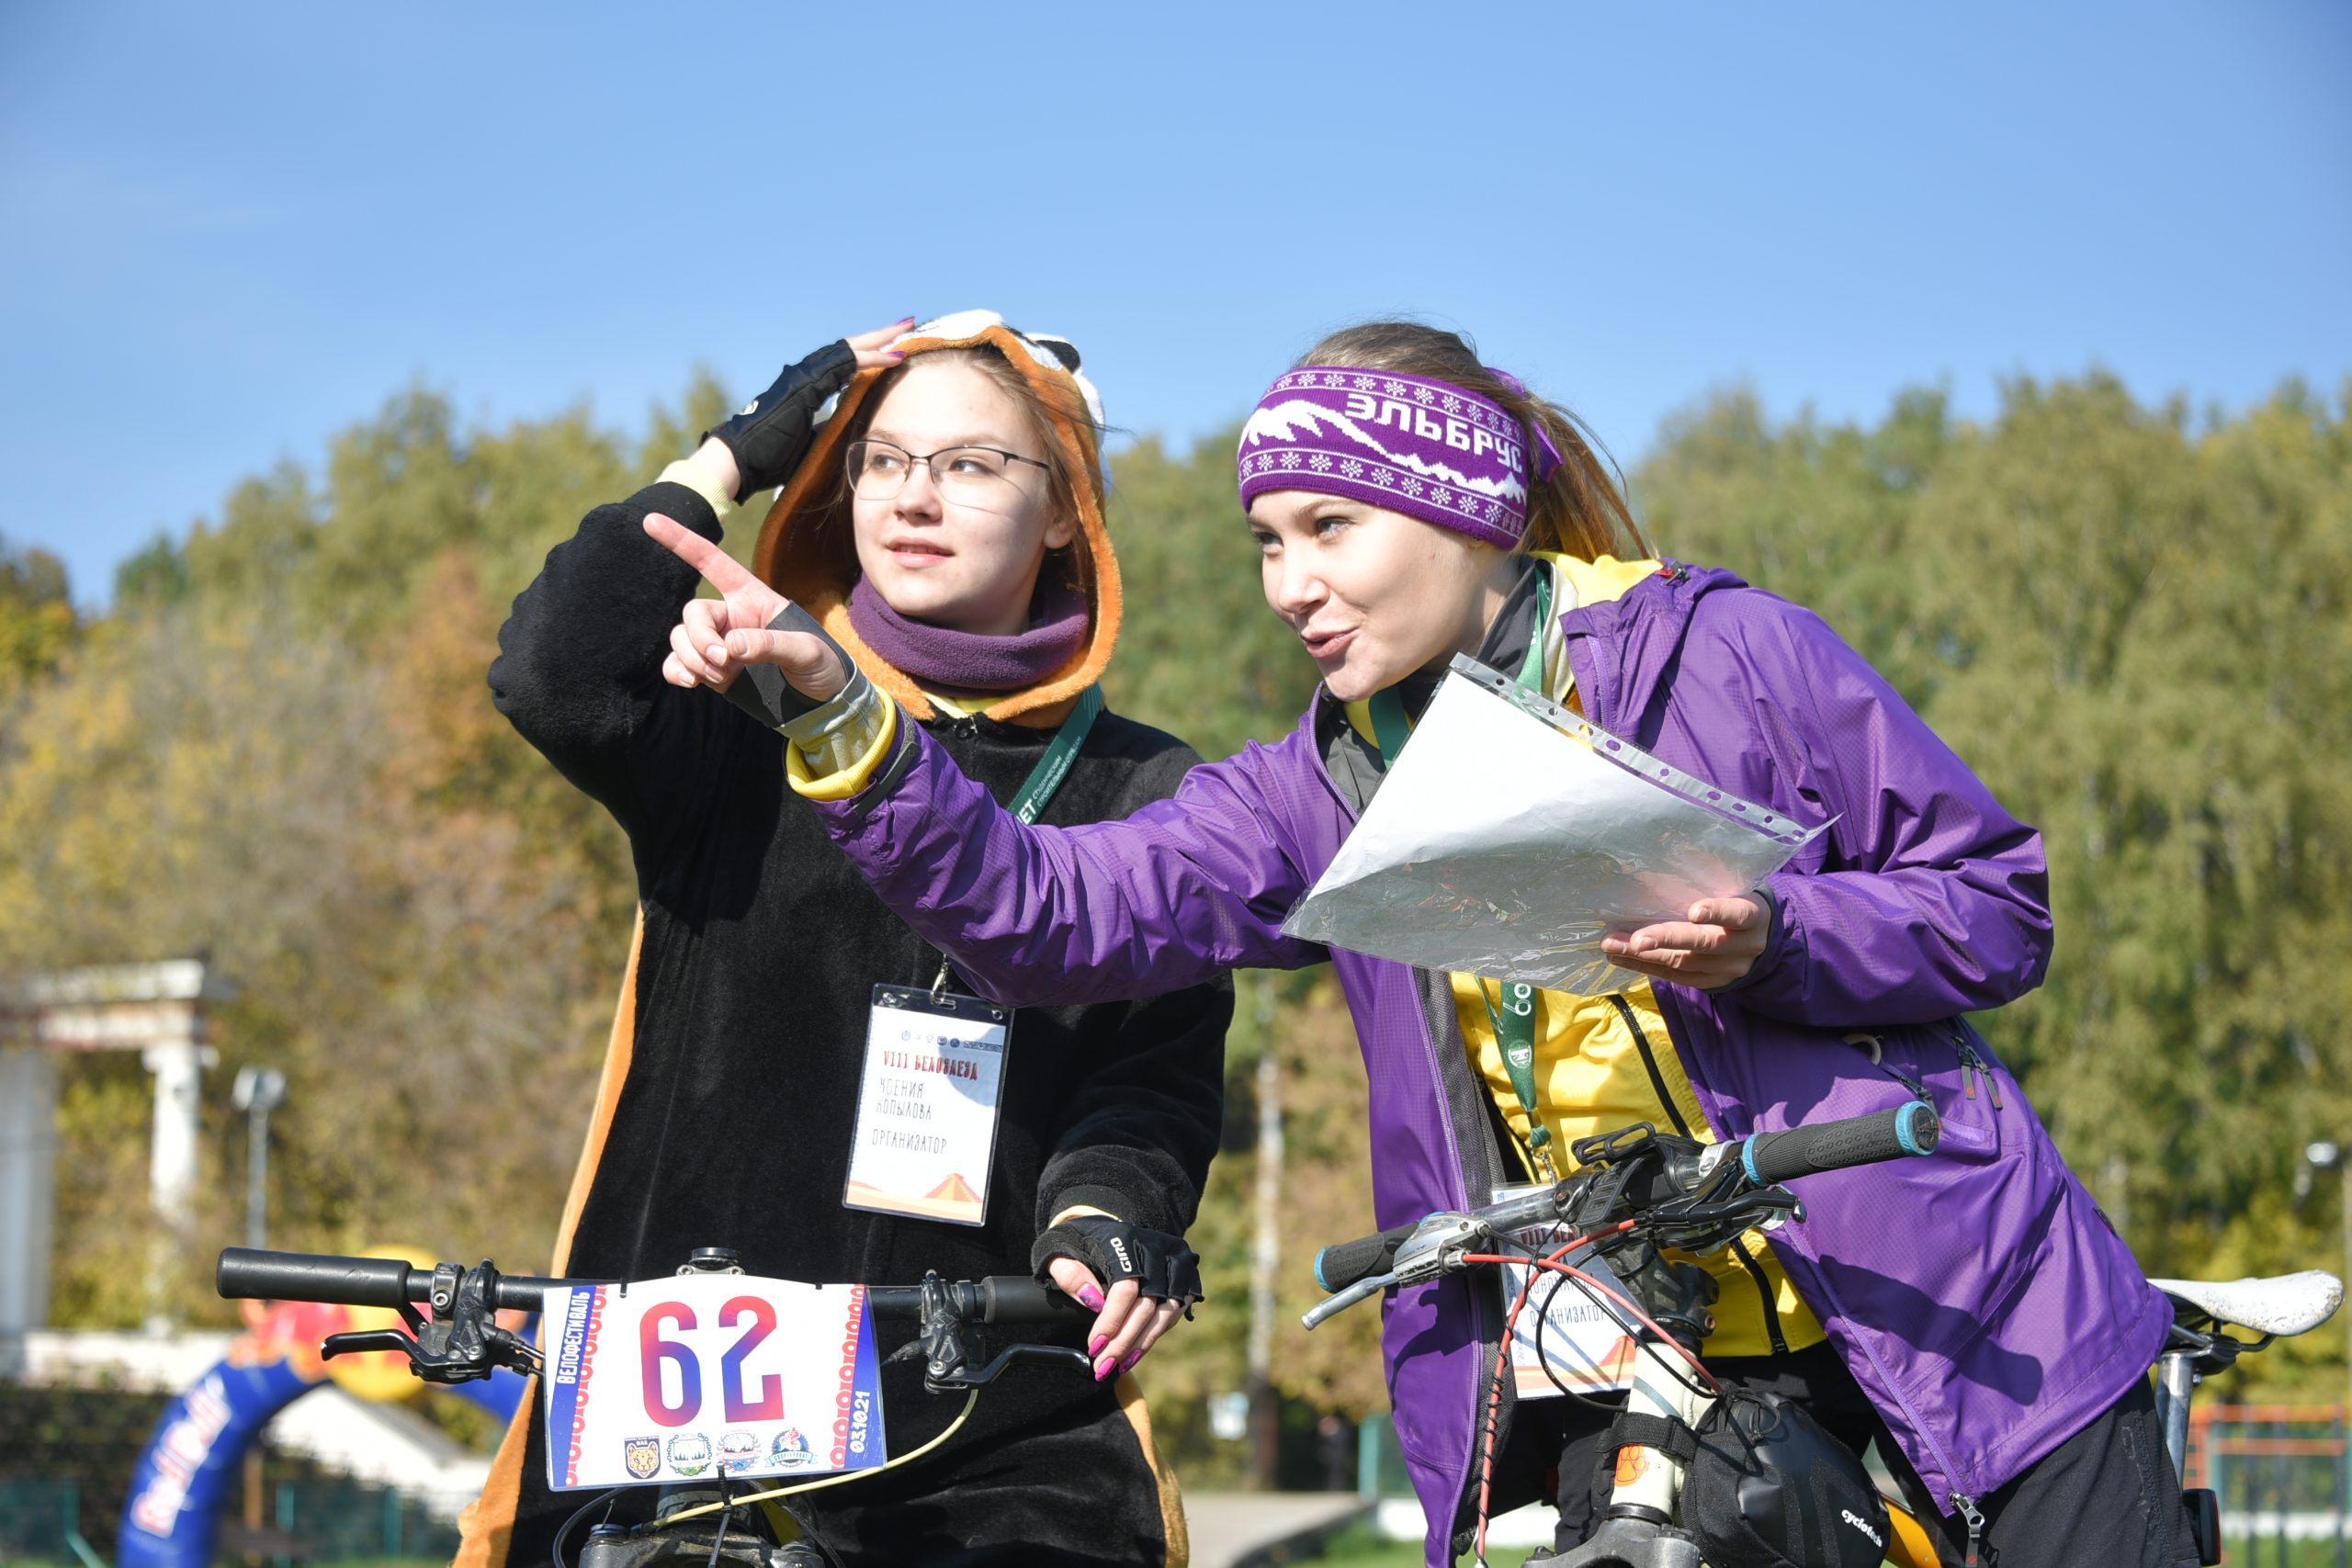 Участницы велоквеста Ксения Копылова (слева) и Полина Пономарева. Фото: Пелагия Замятина